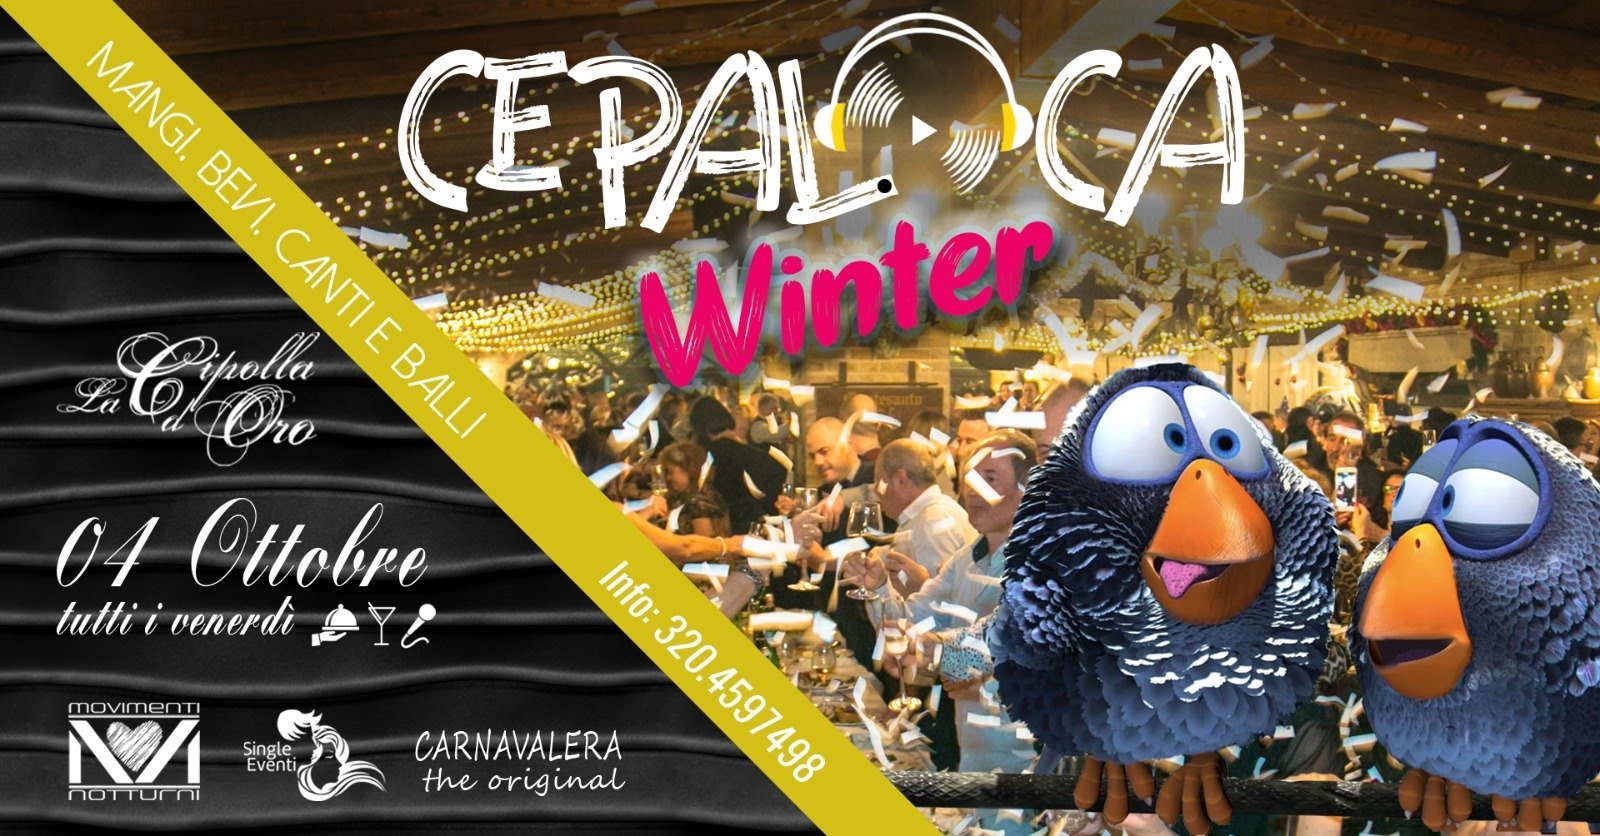 Secondo evento Cepaloca Winter ristorante La Cipolla D'Oro